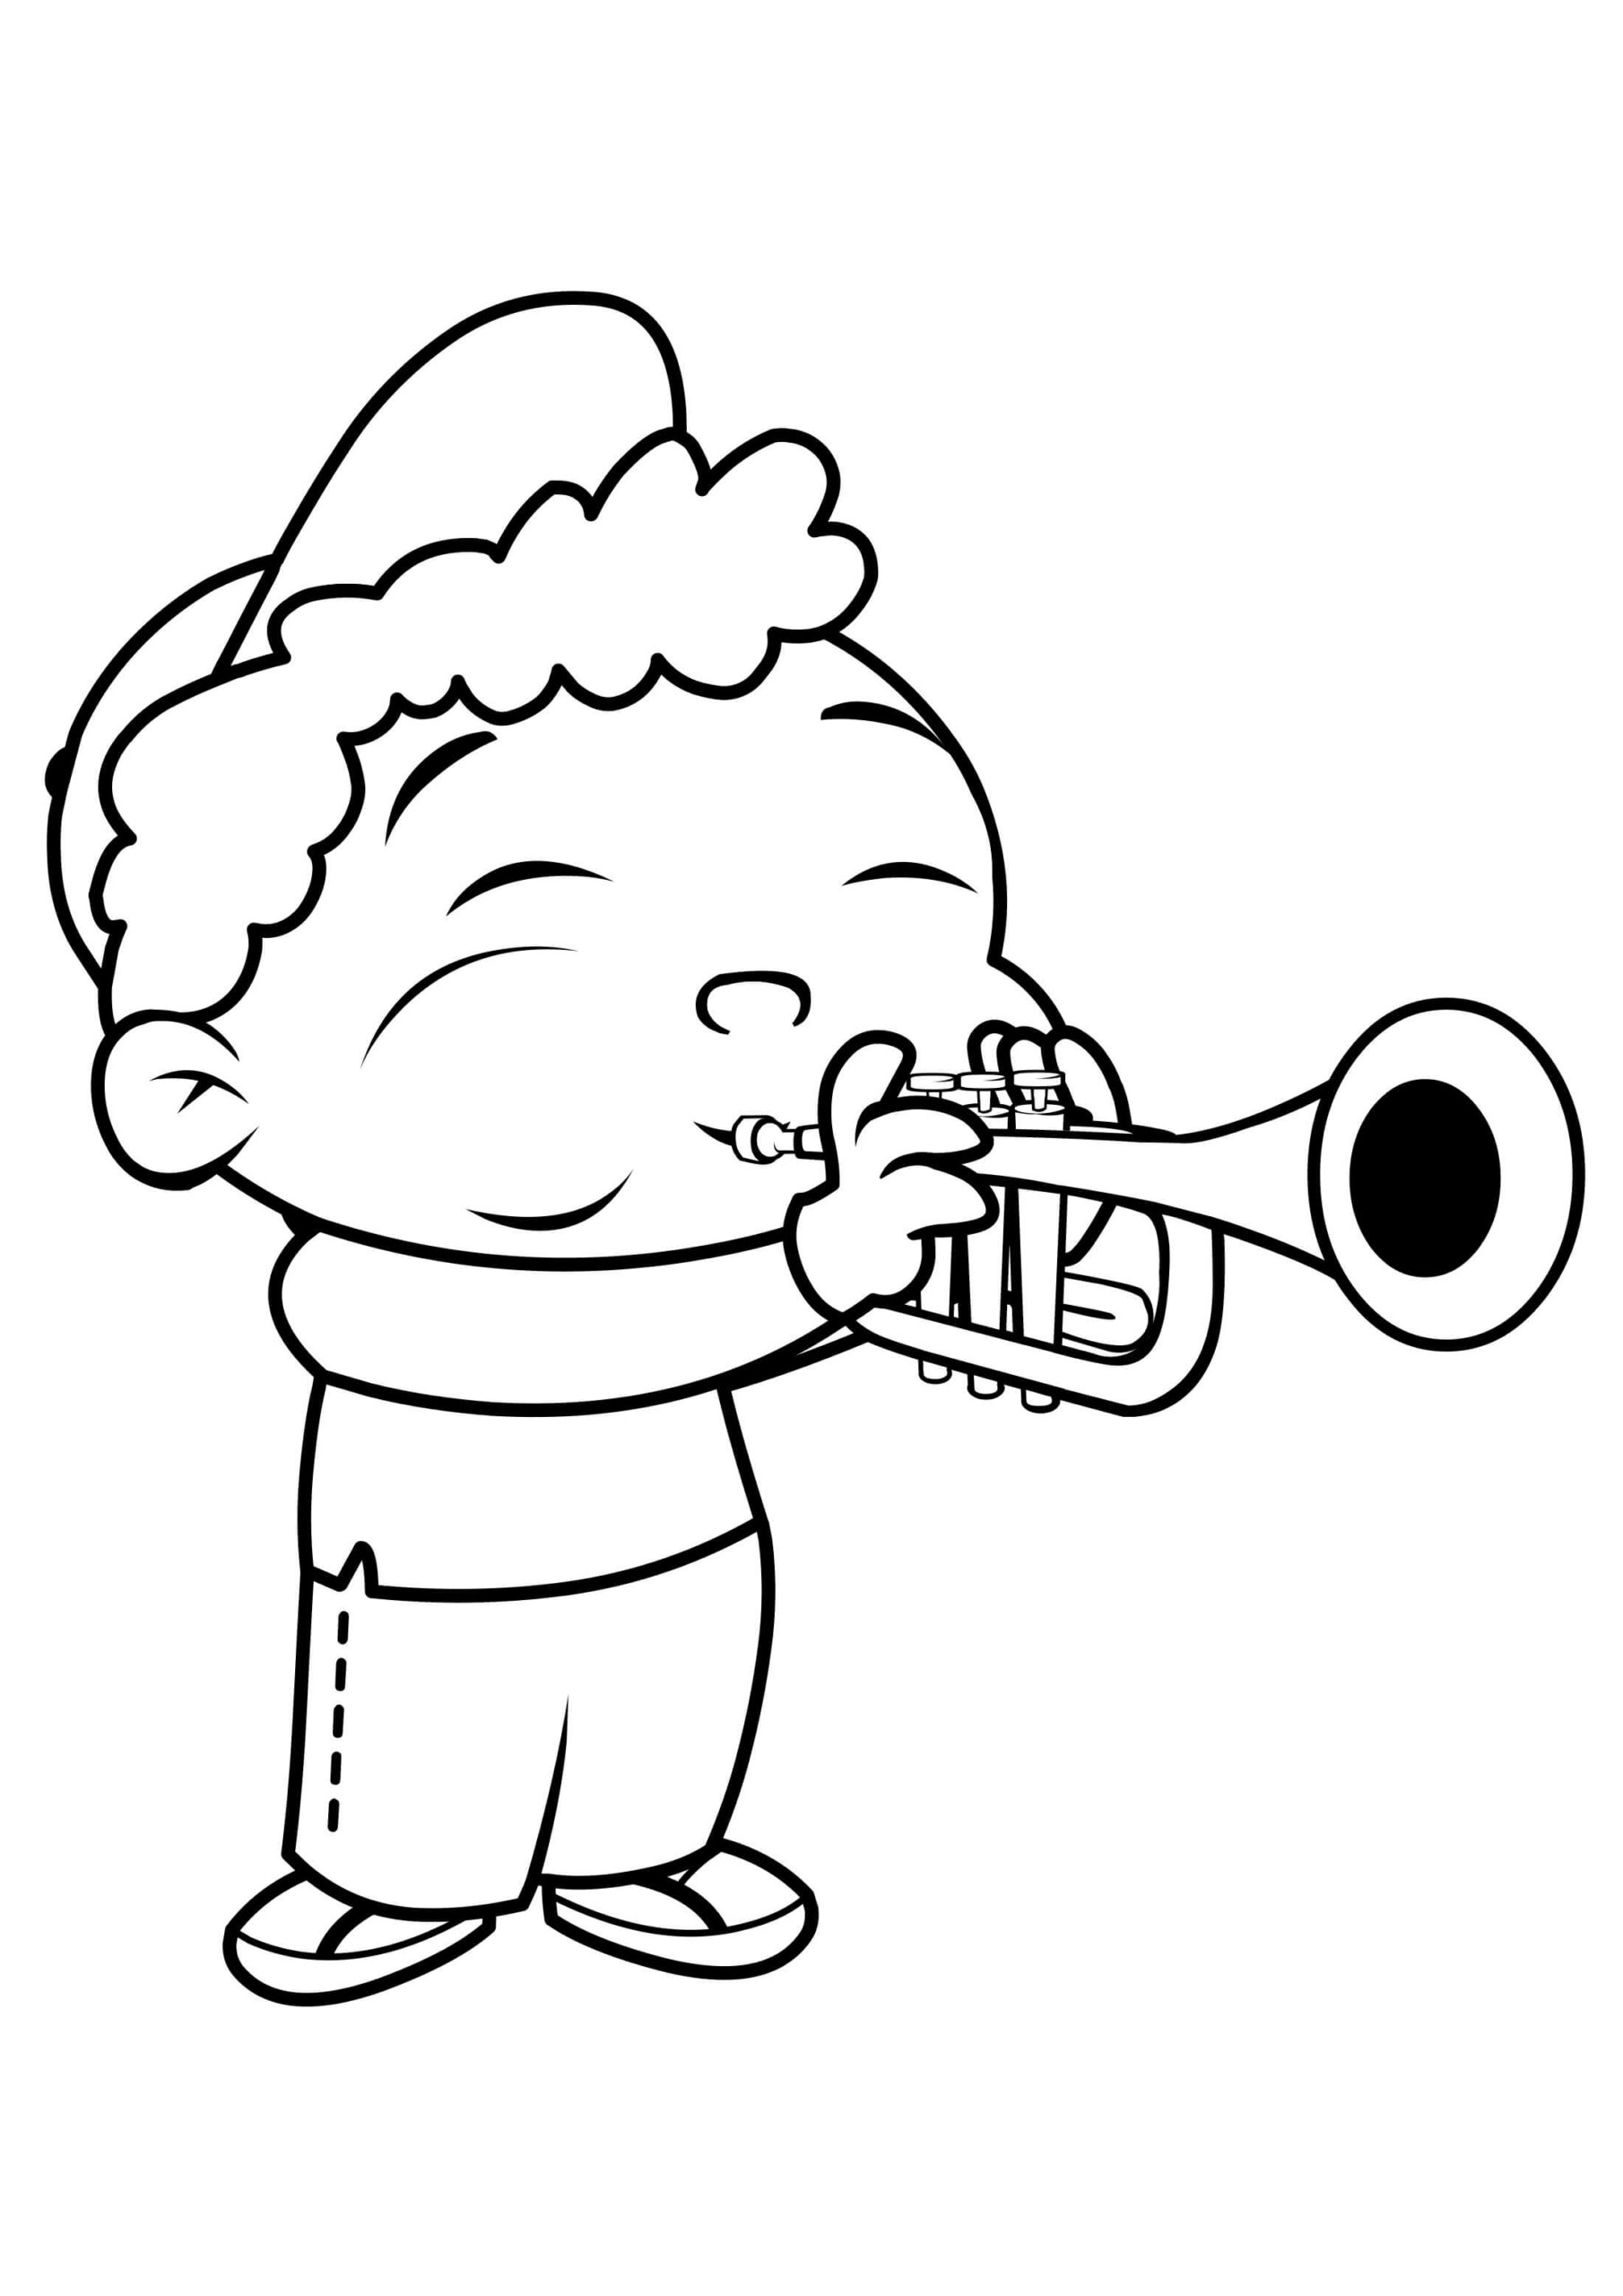 Coloriage Quincy joue de la trompette à imprimer